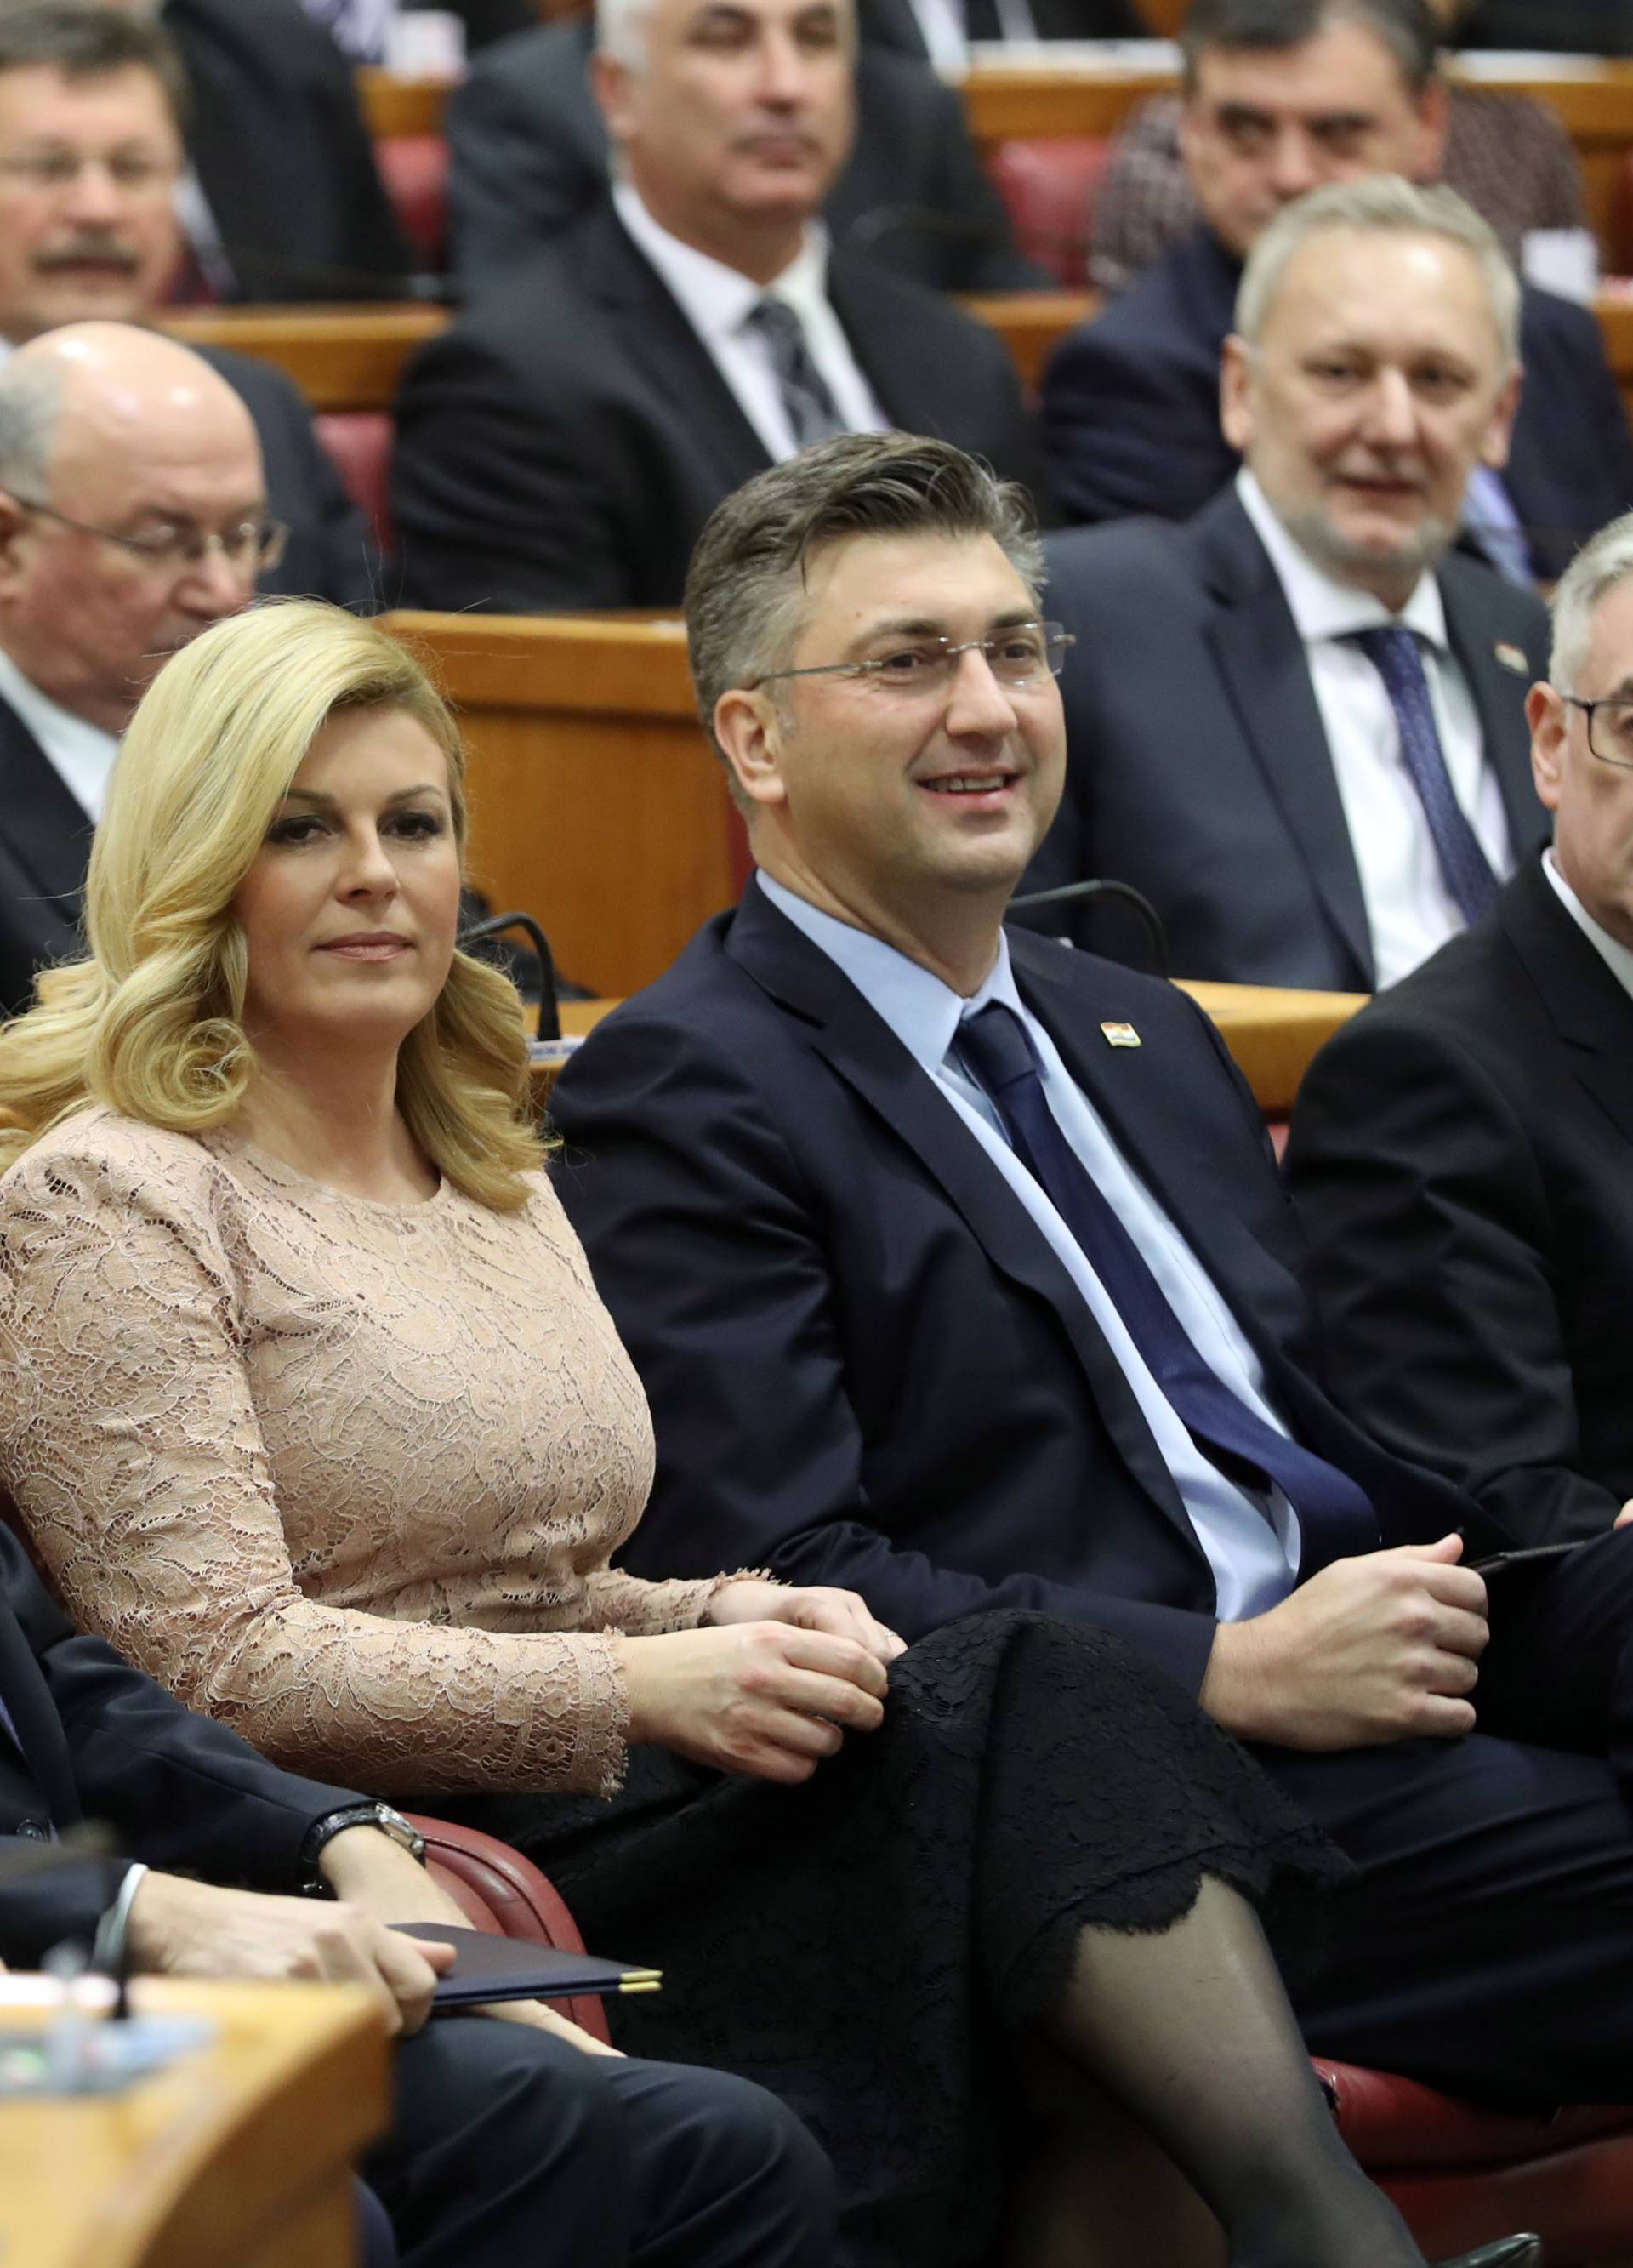 Hrvatski sabor sveèanom sjednicom obiljeio 25. godinjicu prizn